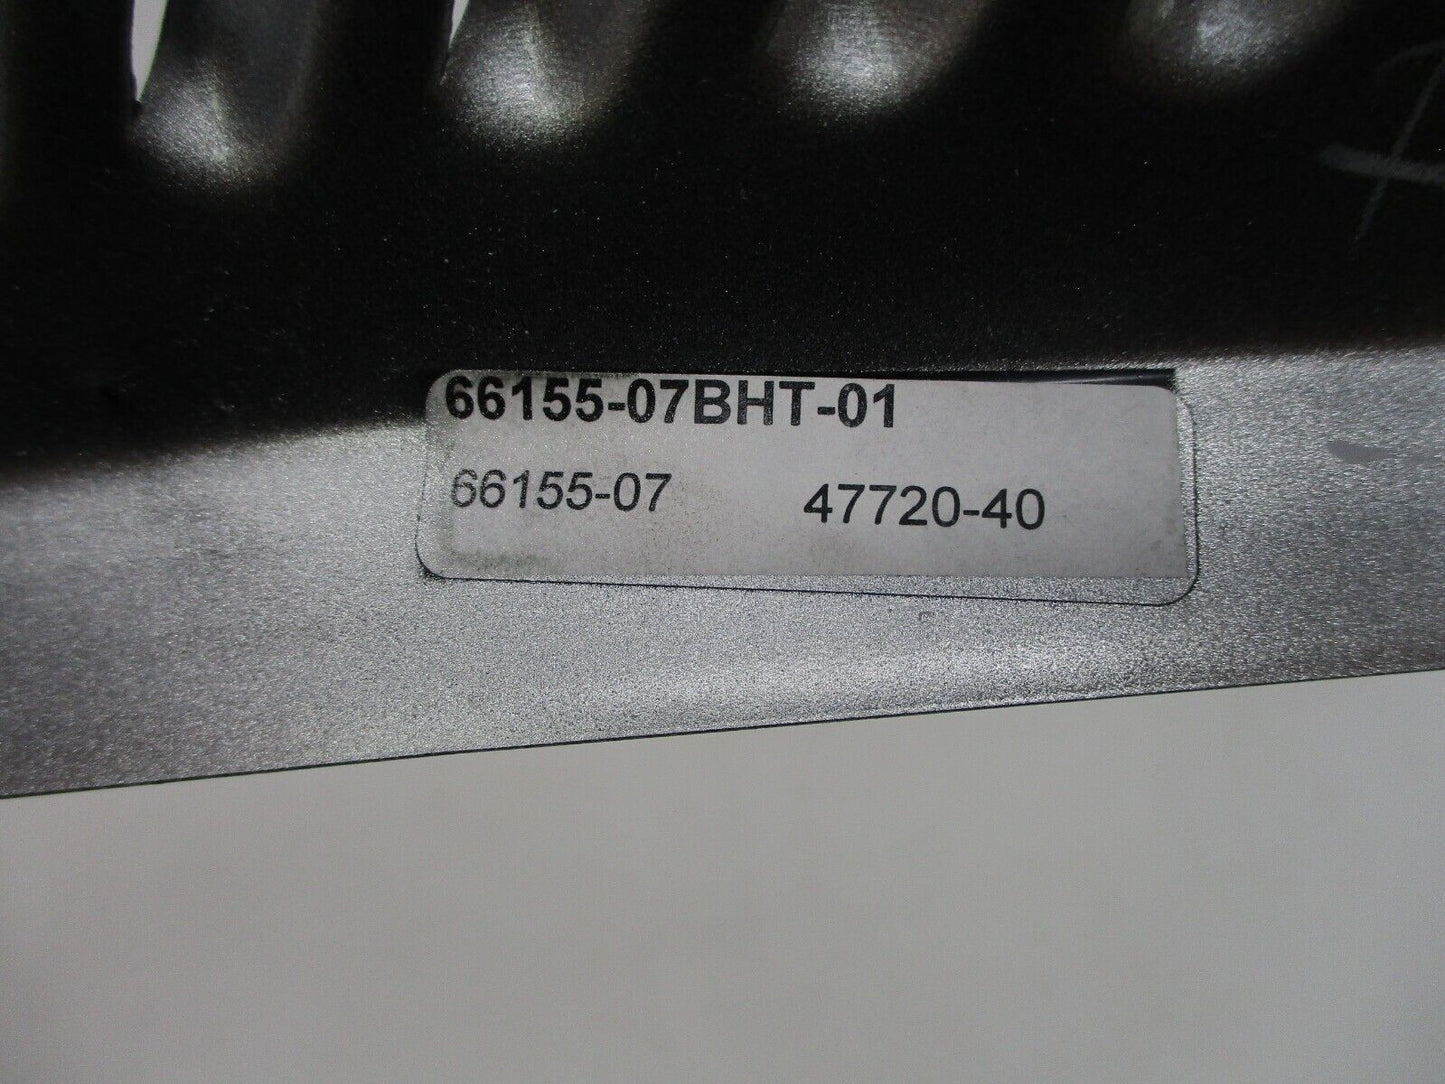 Harley Davidson OEM V-Rod Side Cover 66155-07